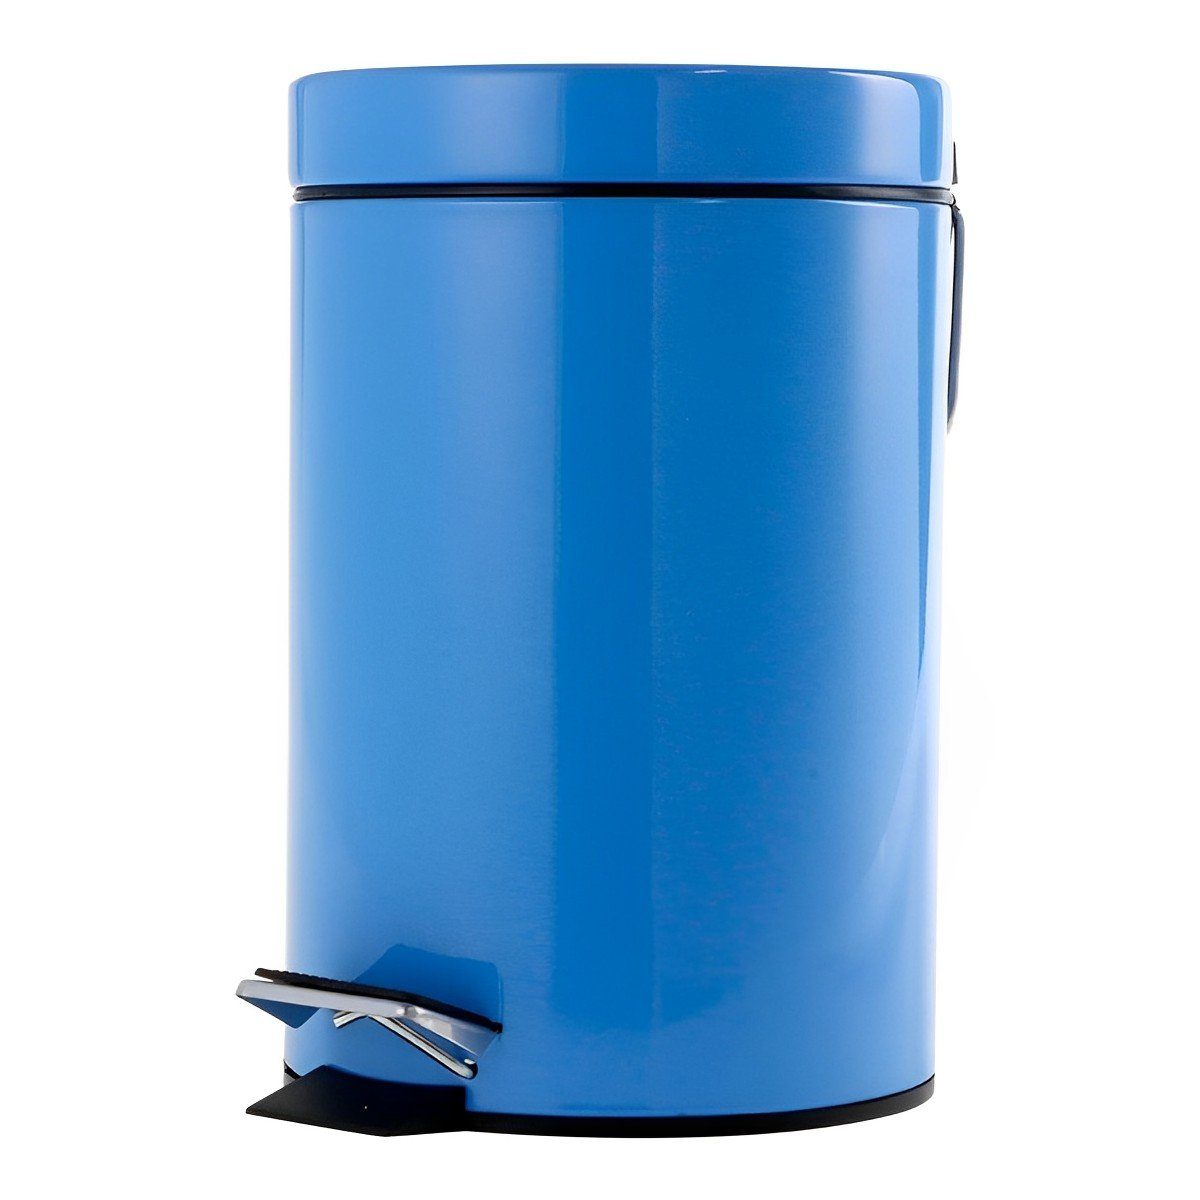 Liter Blau Schäfer 3 Tretabfalleimer Büro Design Mülleimer